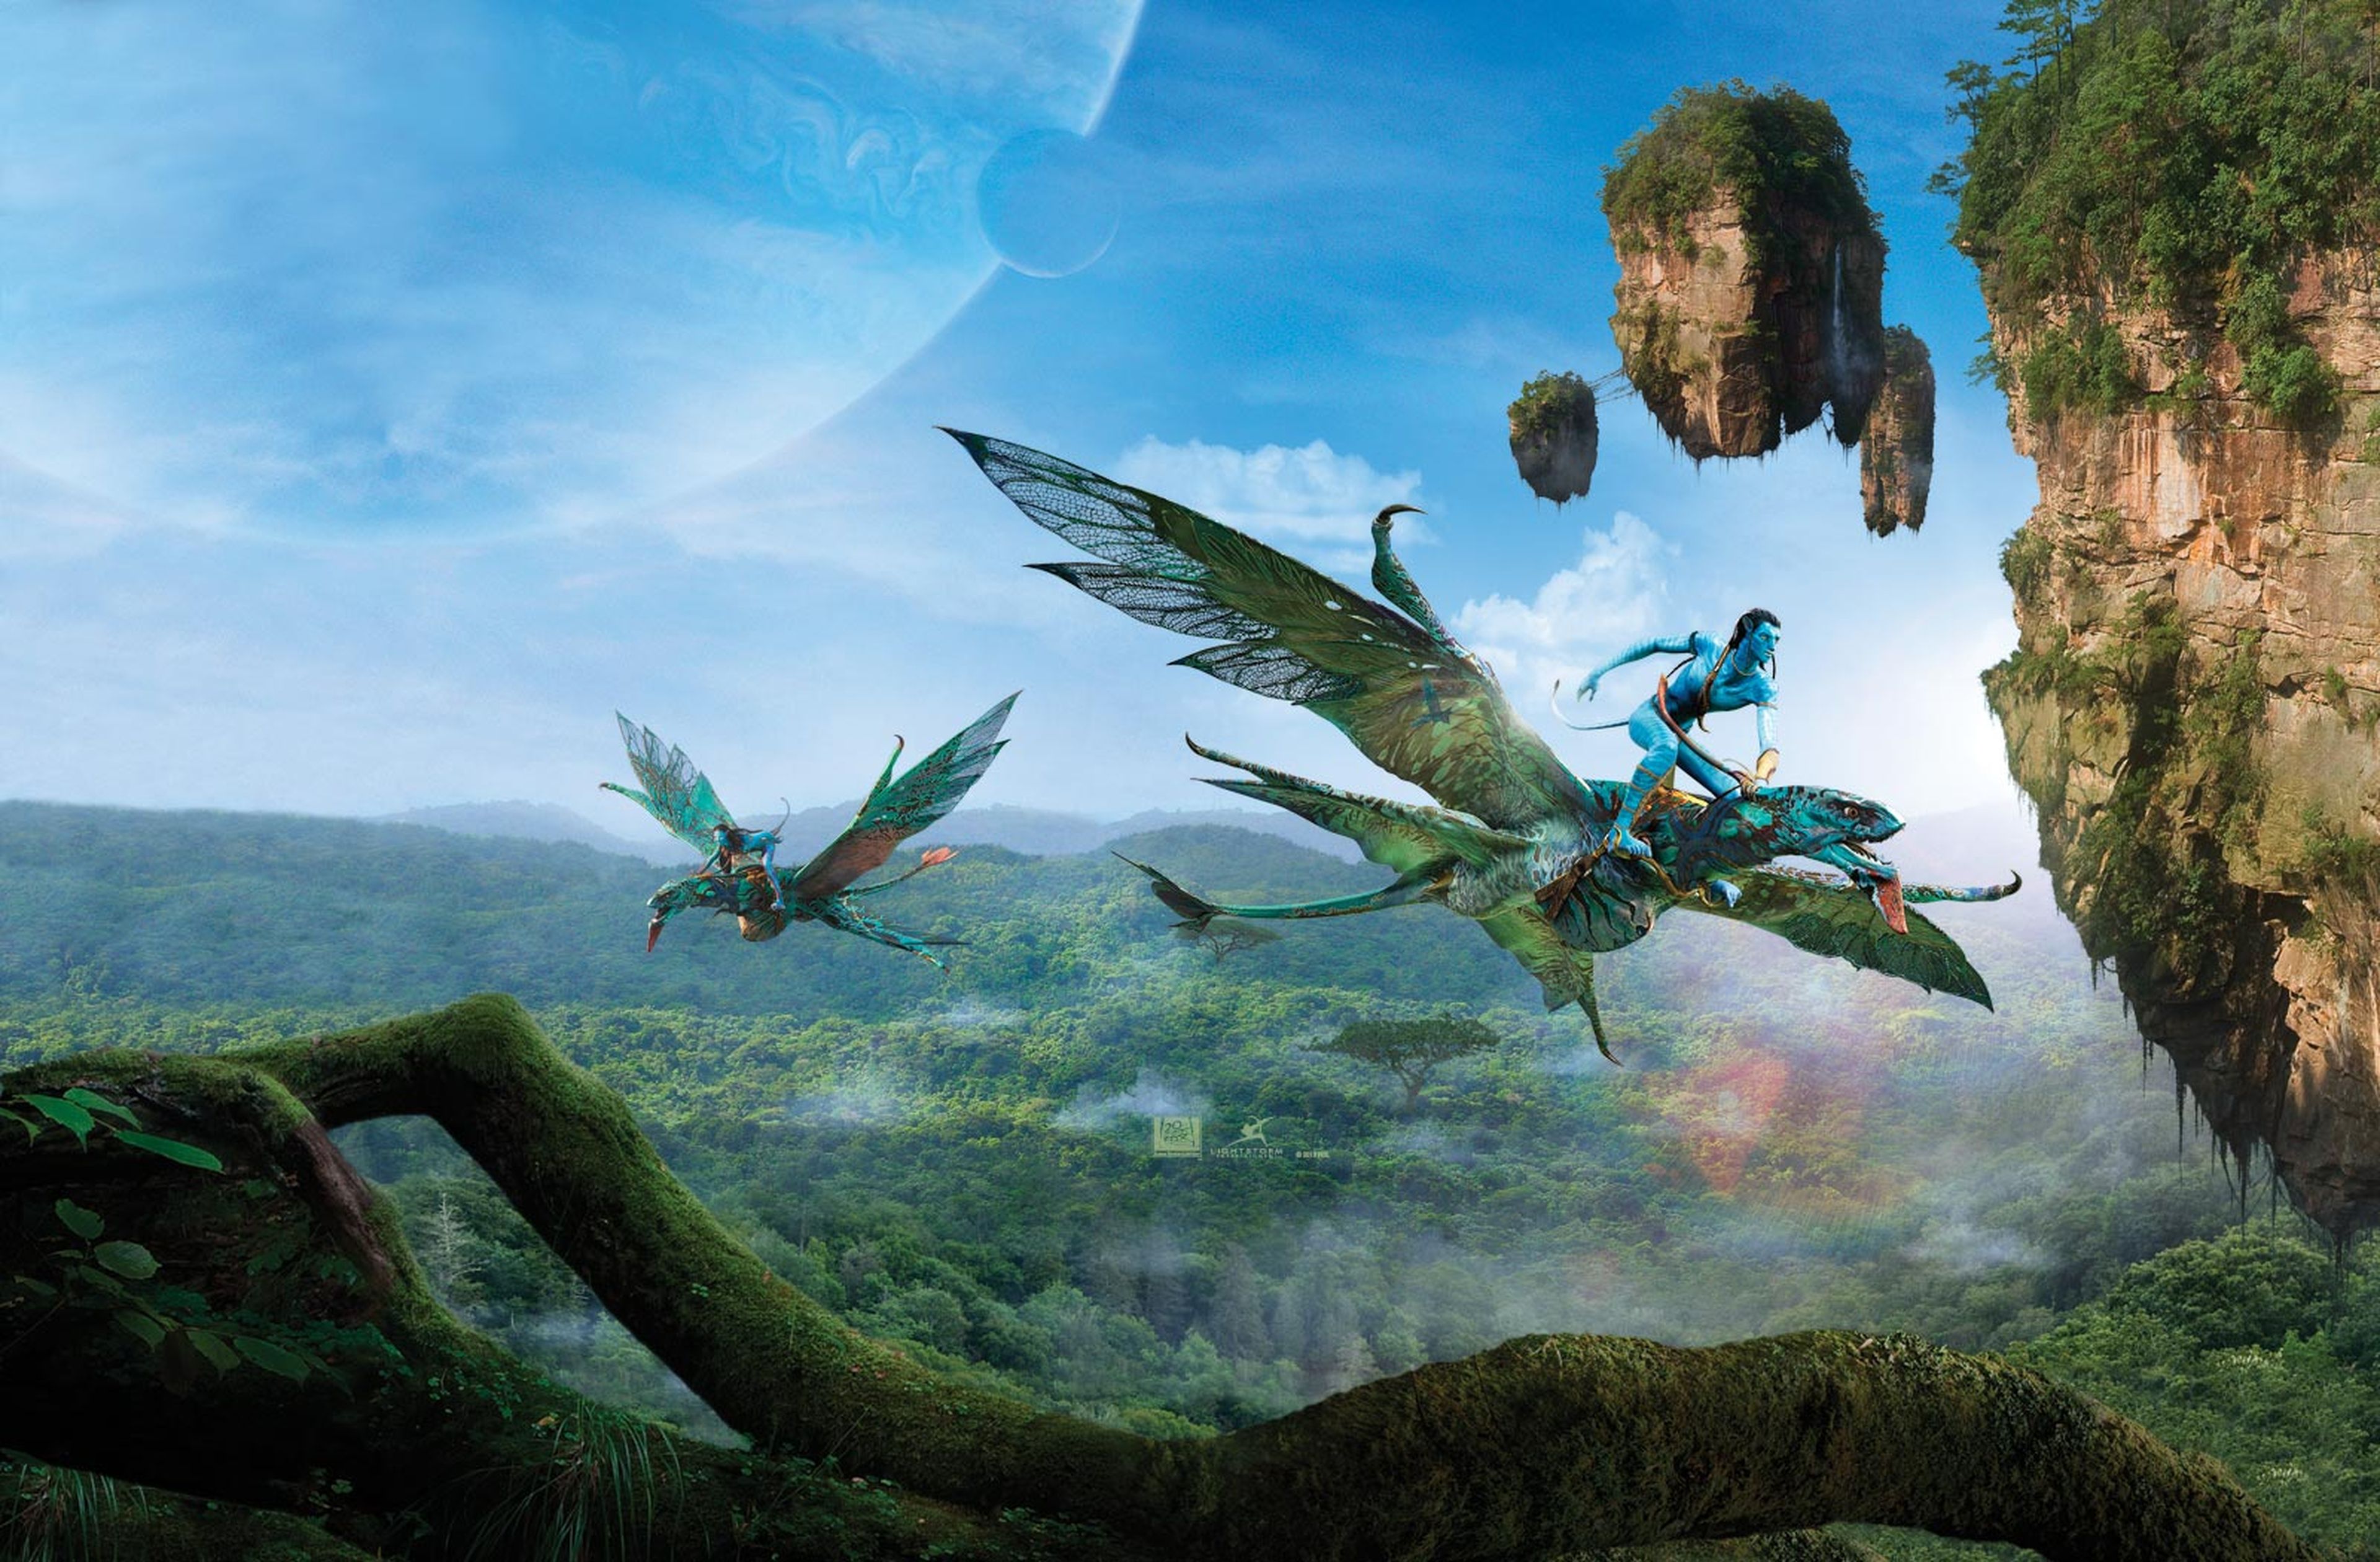 Cine de ciencia ficción: Avatar